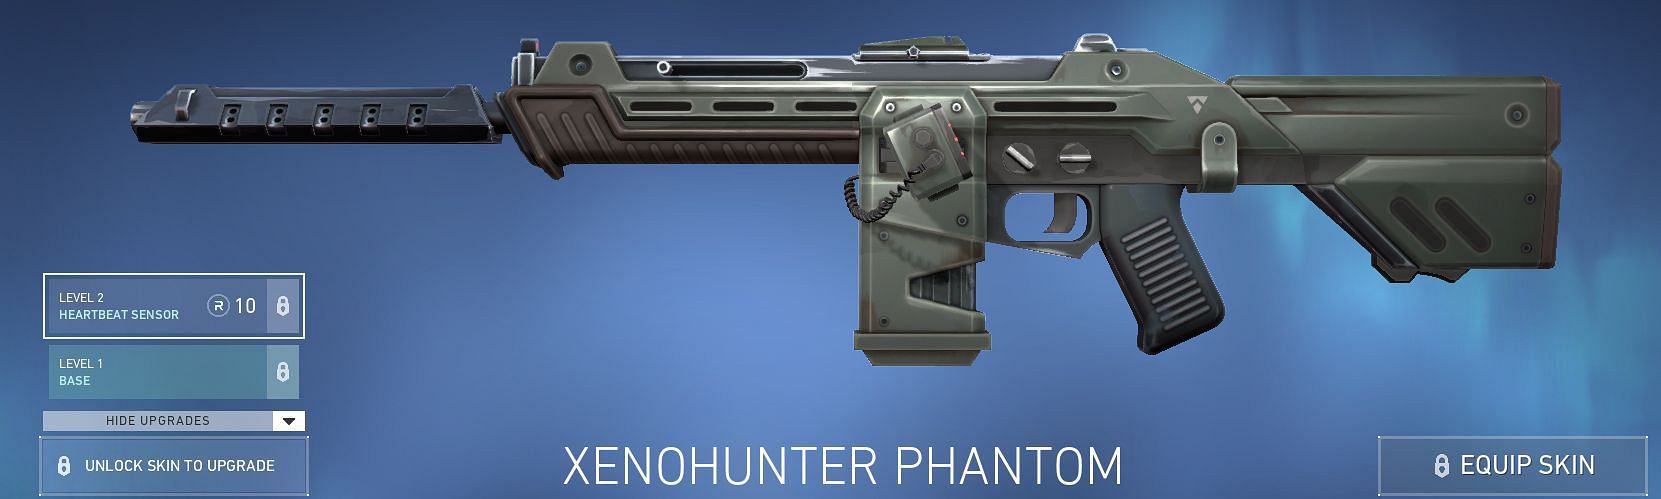 Xenohunter Phantom (Image via Riot Games)